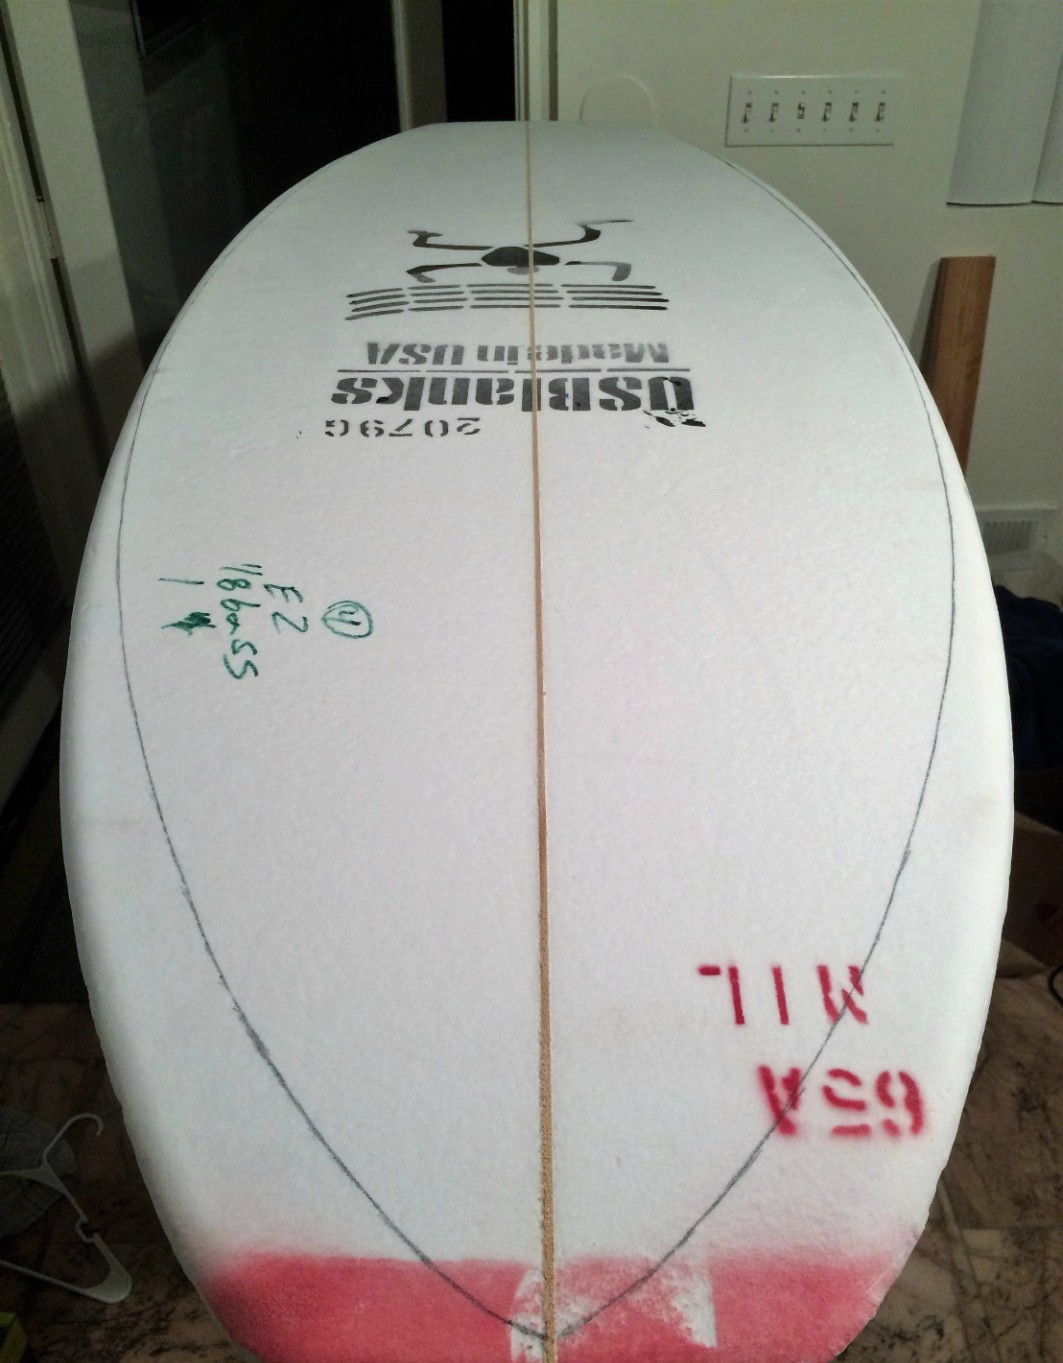 3. Surfboard Shaping Foam Blanks — Greenlight Surf Co.